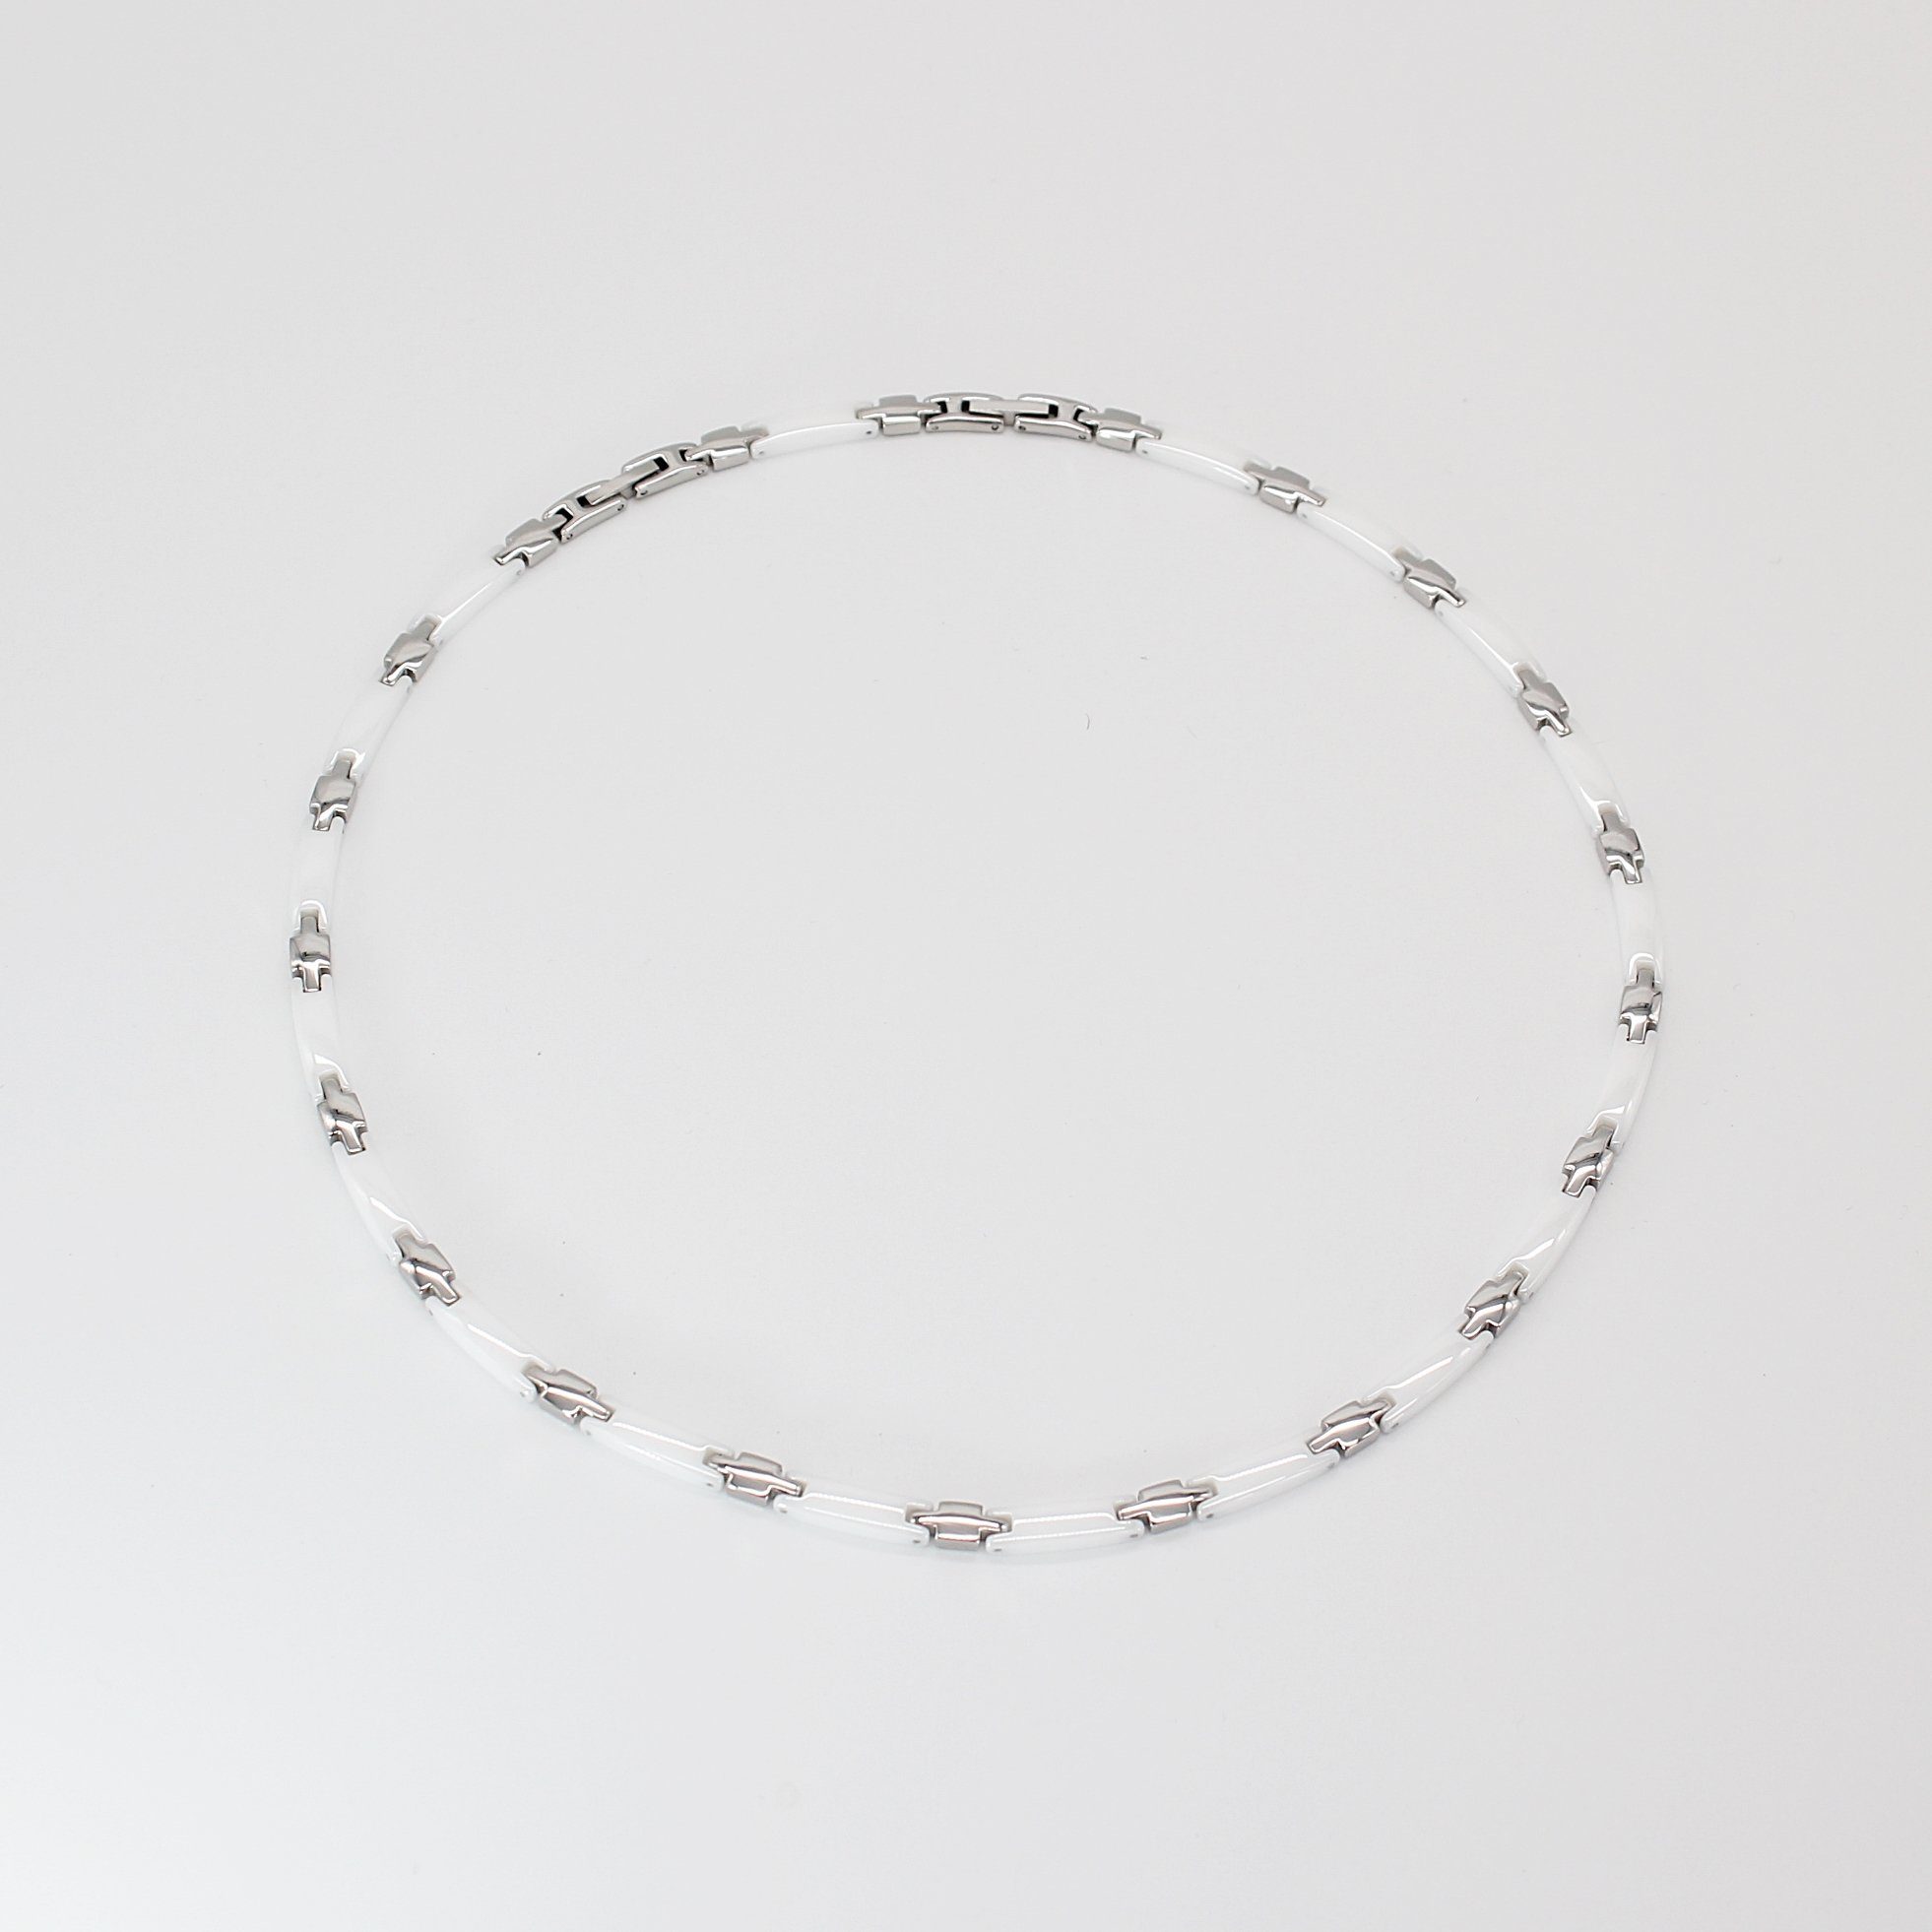 ELLAWIL Collier Kette Collier aus Keramik und Edelstahl Damenkette Weiß, Silber (Kettenlänge 51 cm), inklusive Geschenkschachtel